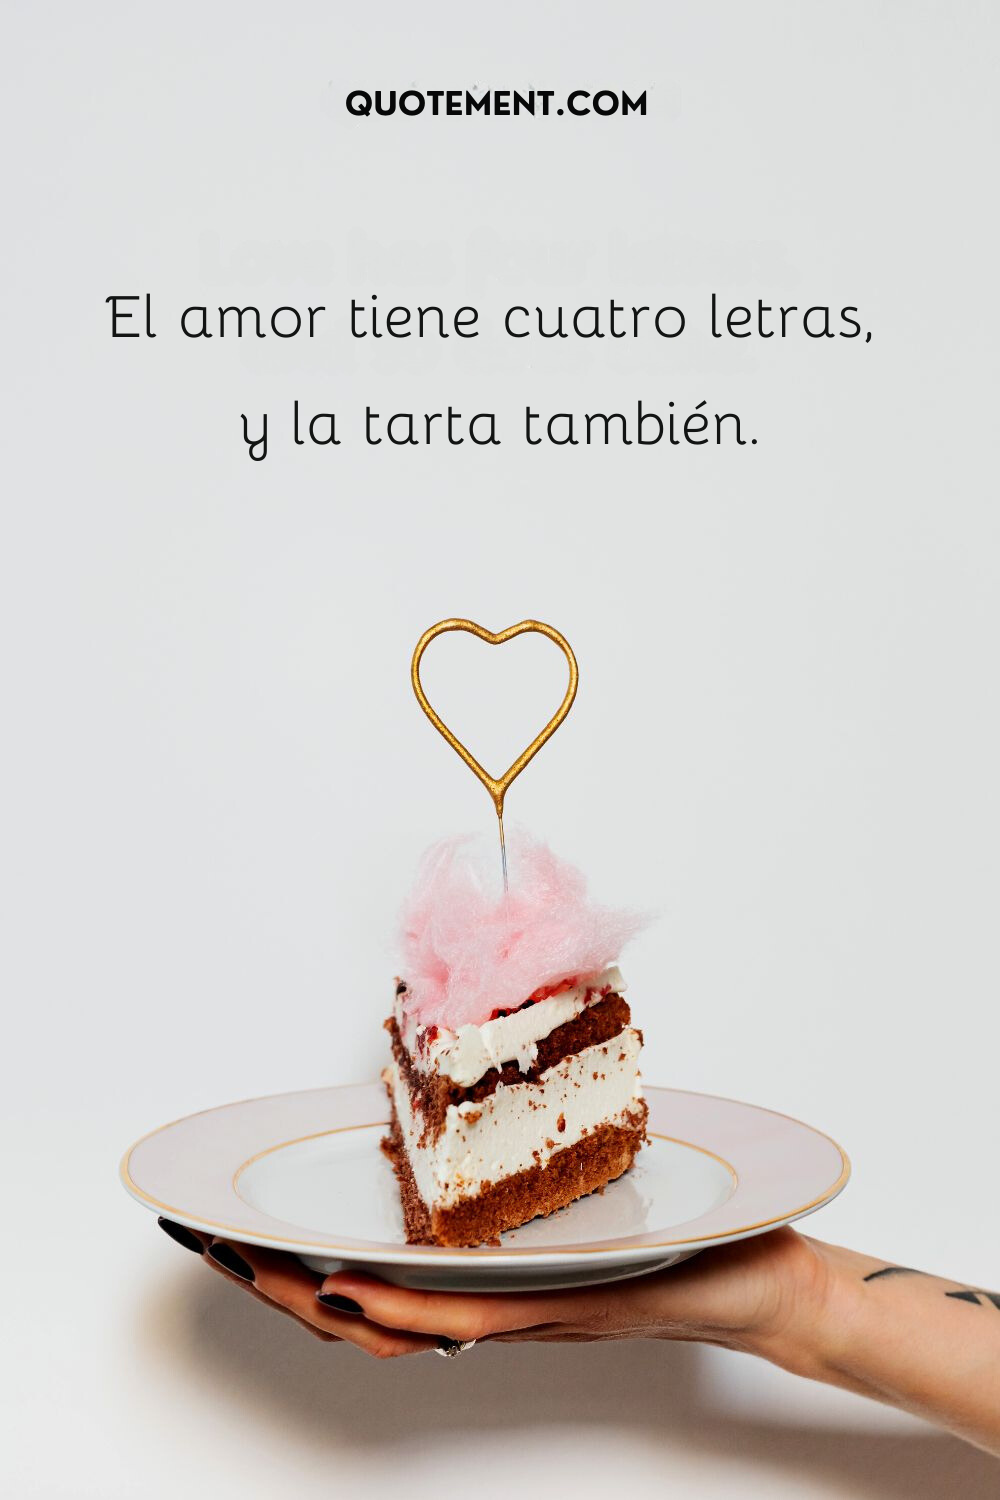 El amor tiene cuatro letras, y el pastel también